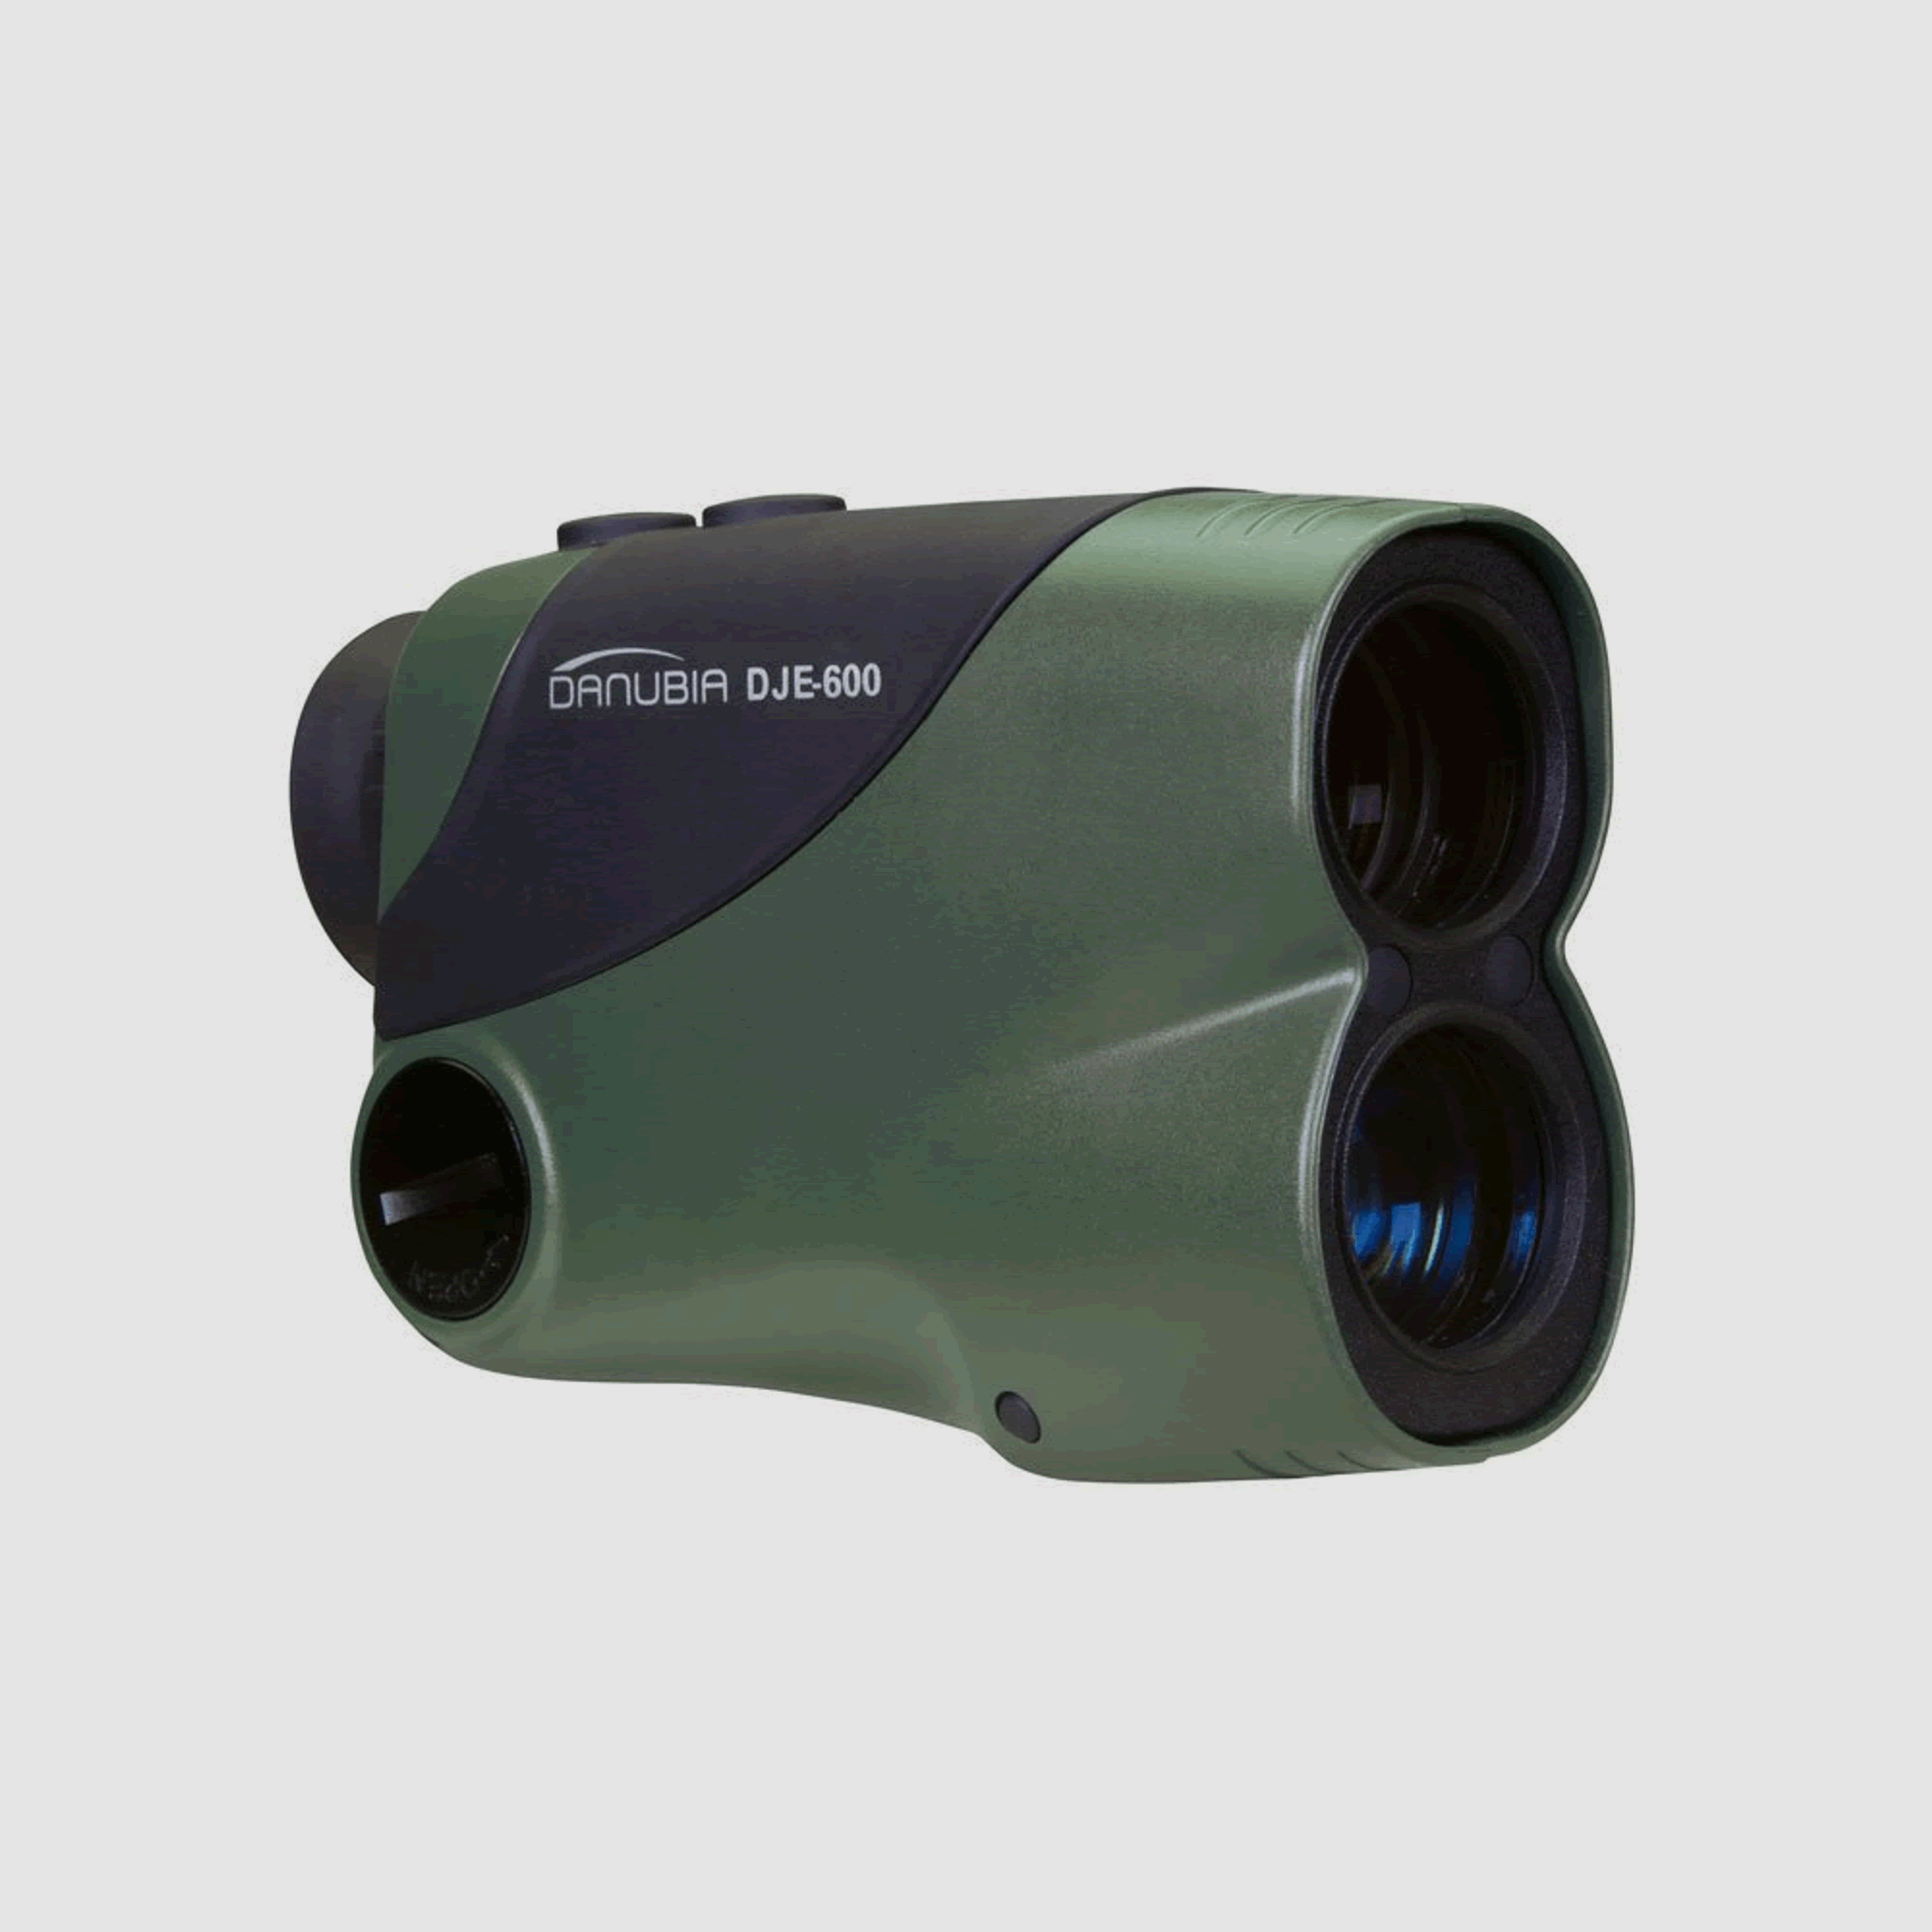 DANUBIA Entfernungsmesser Laser Range Finder DJE-600, bis 600 m, 6x25, grĂĽn